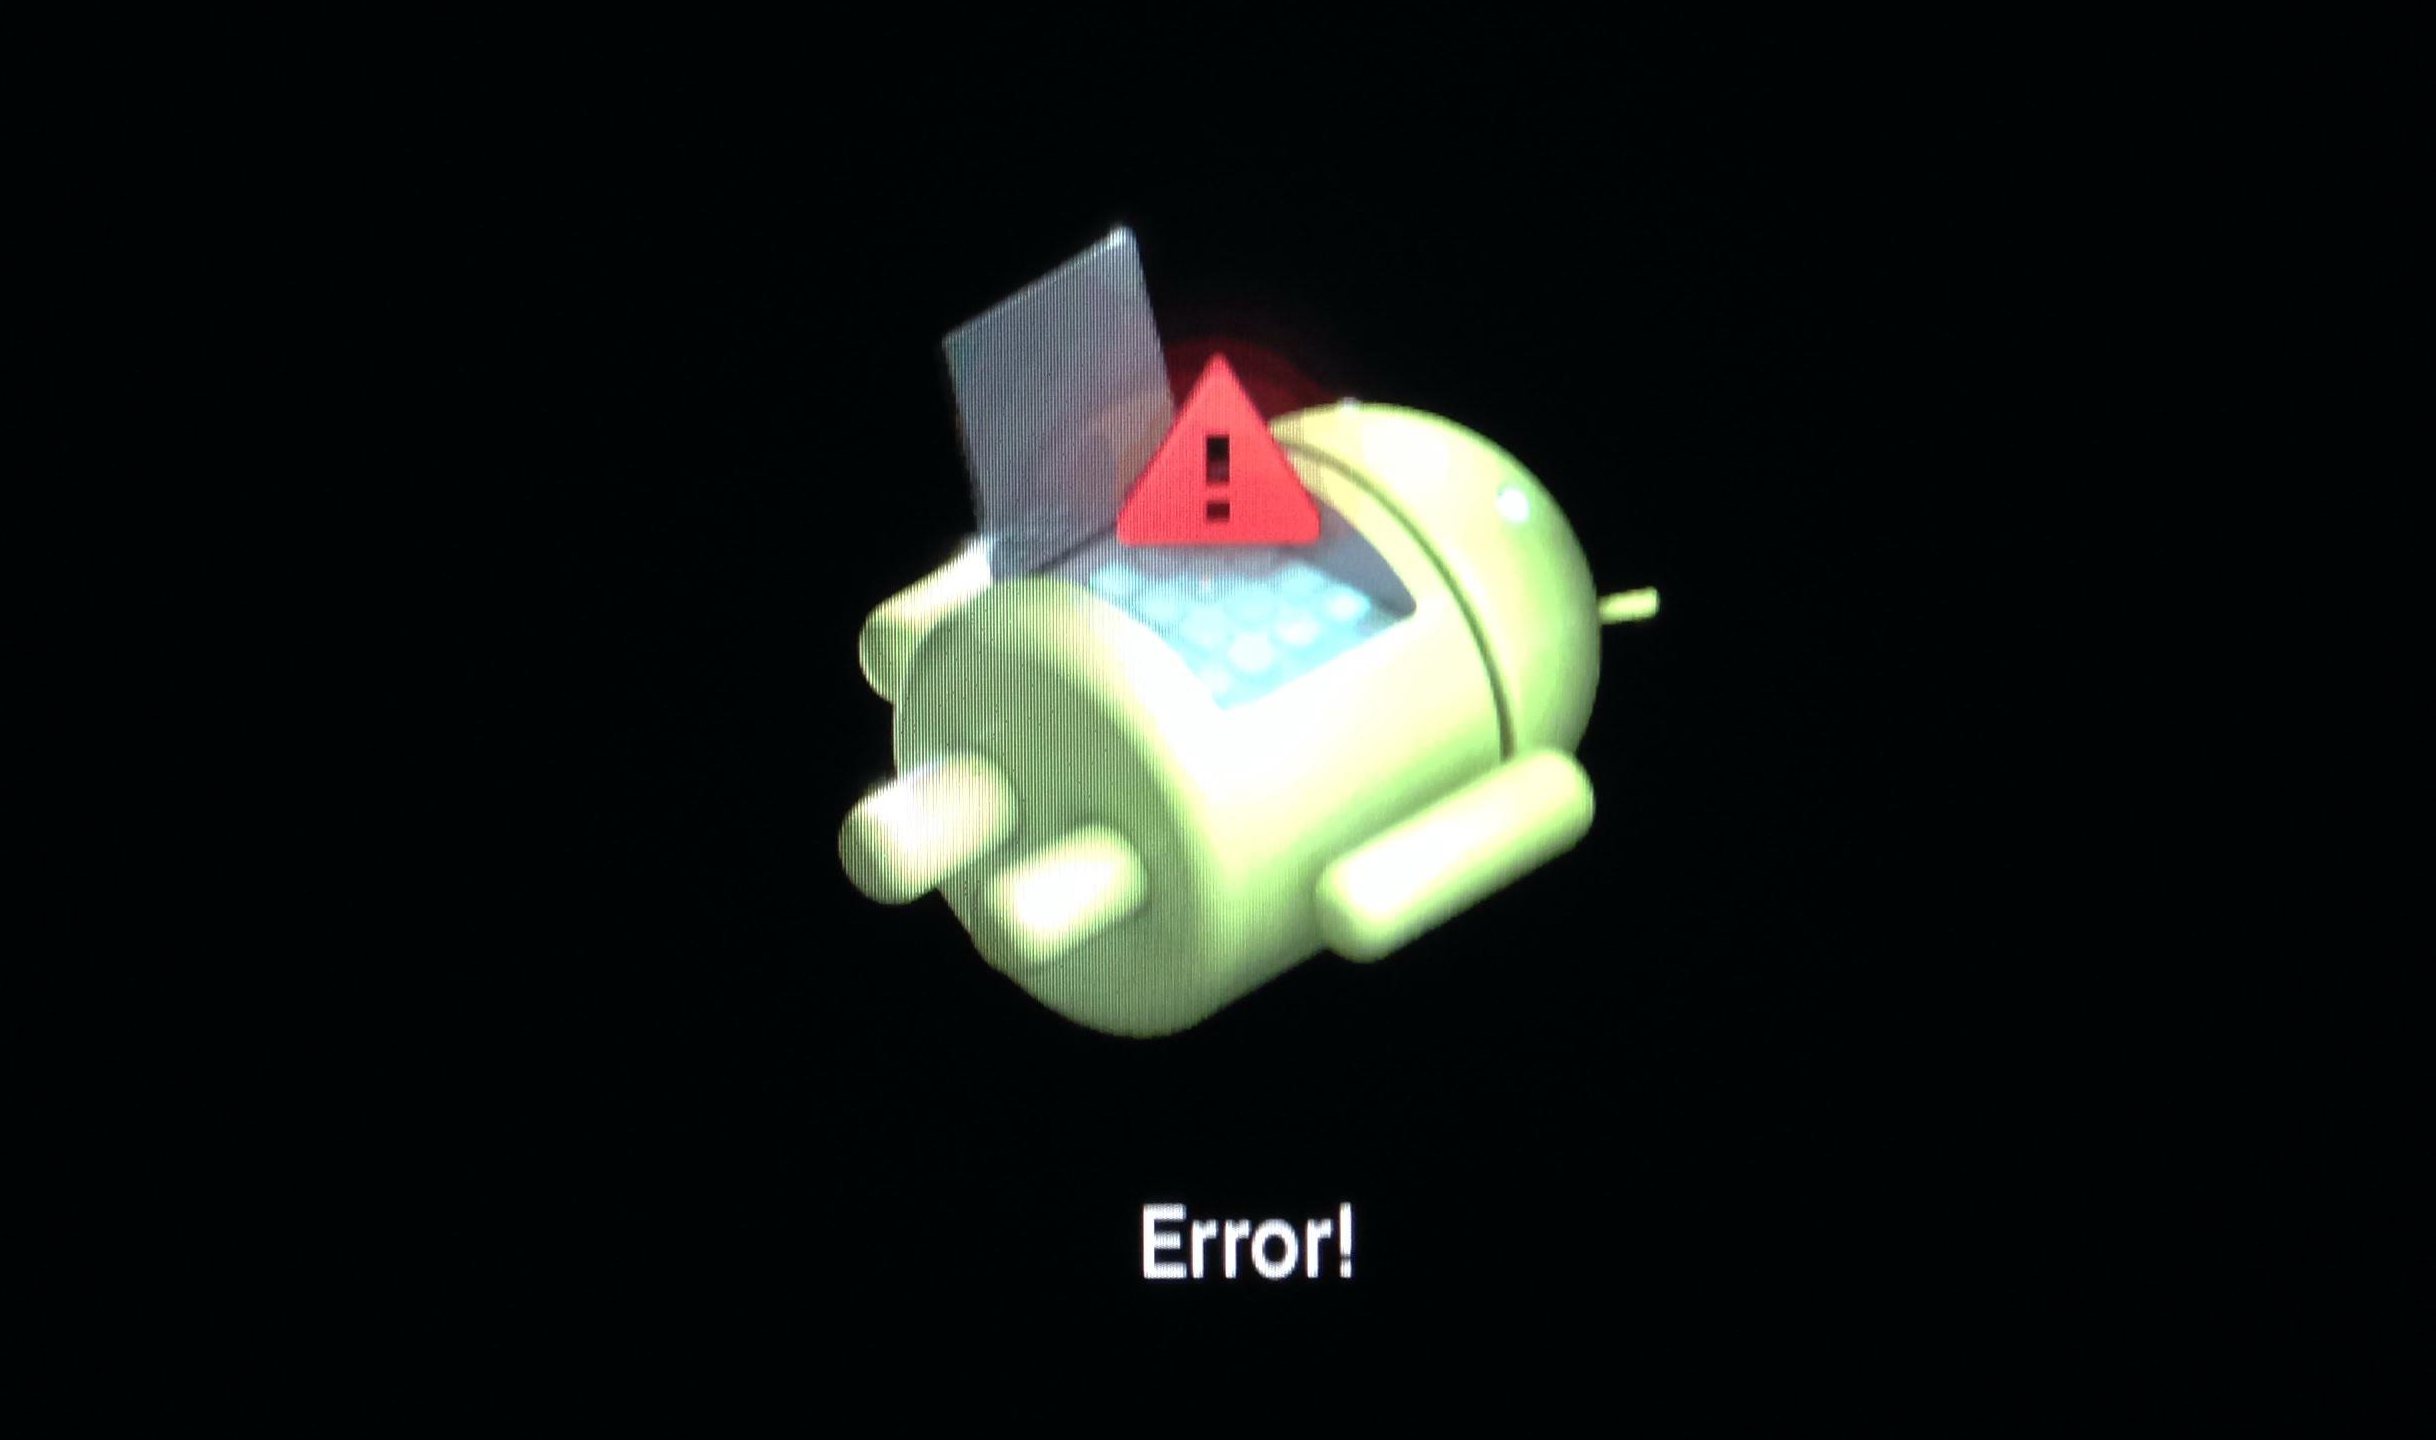 error on echofon android